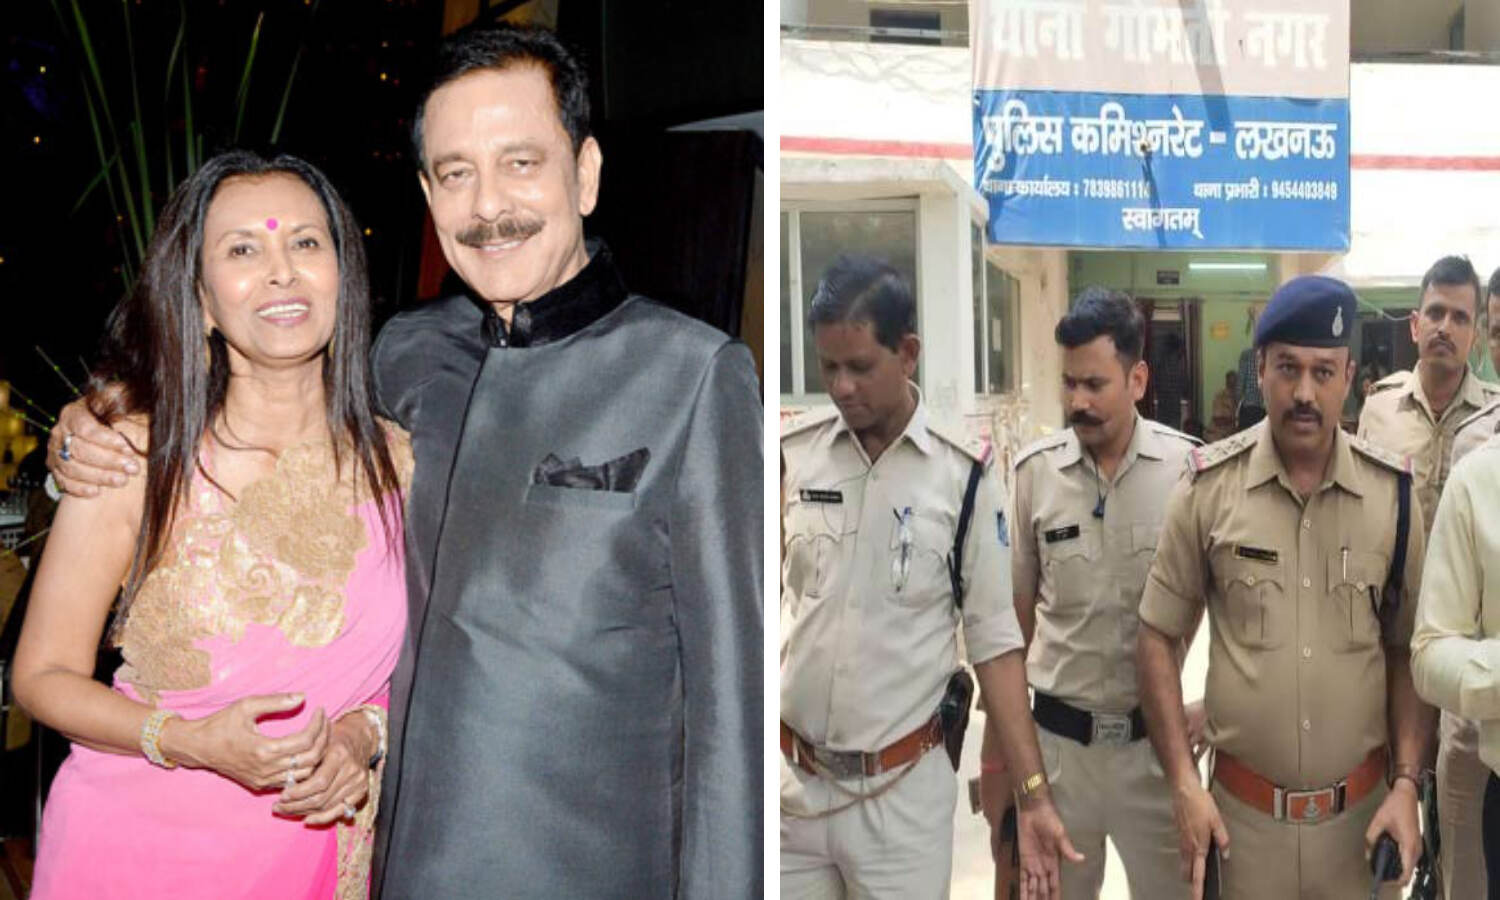 Subrat Roy Sahara News : सुब्रत राय और उनकी पत्नी समेत 14 लोगों की गिरफ्तारी के लिए लखनऊ पहुंची मध्य प्रदेश पुलिस